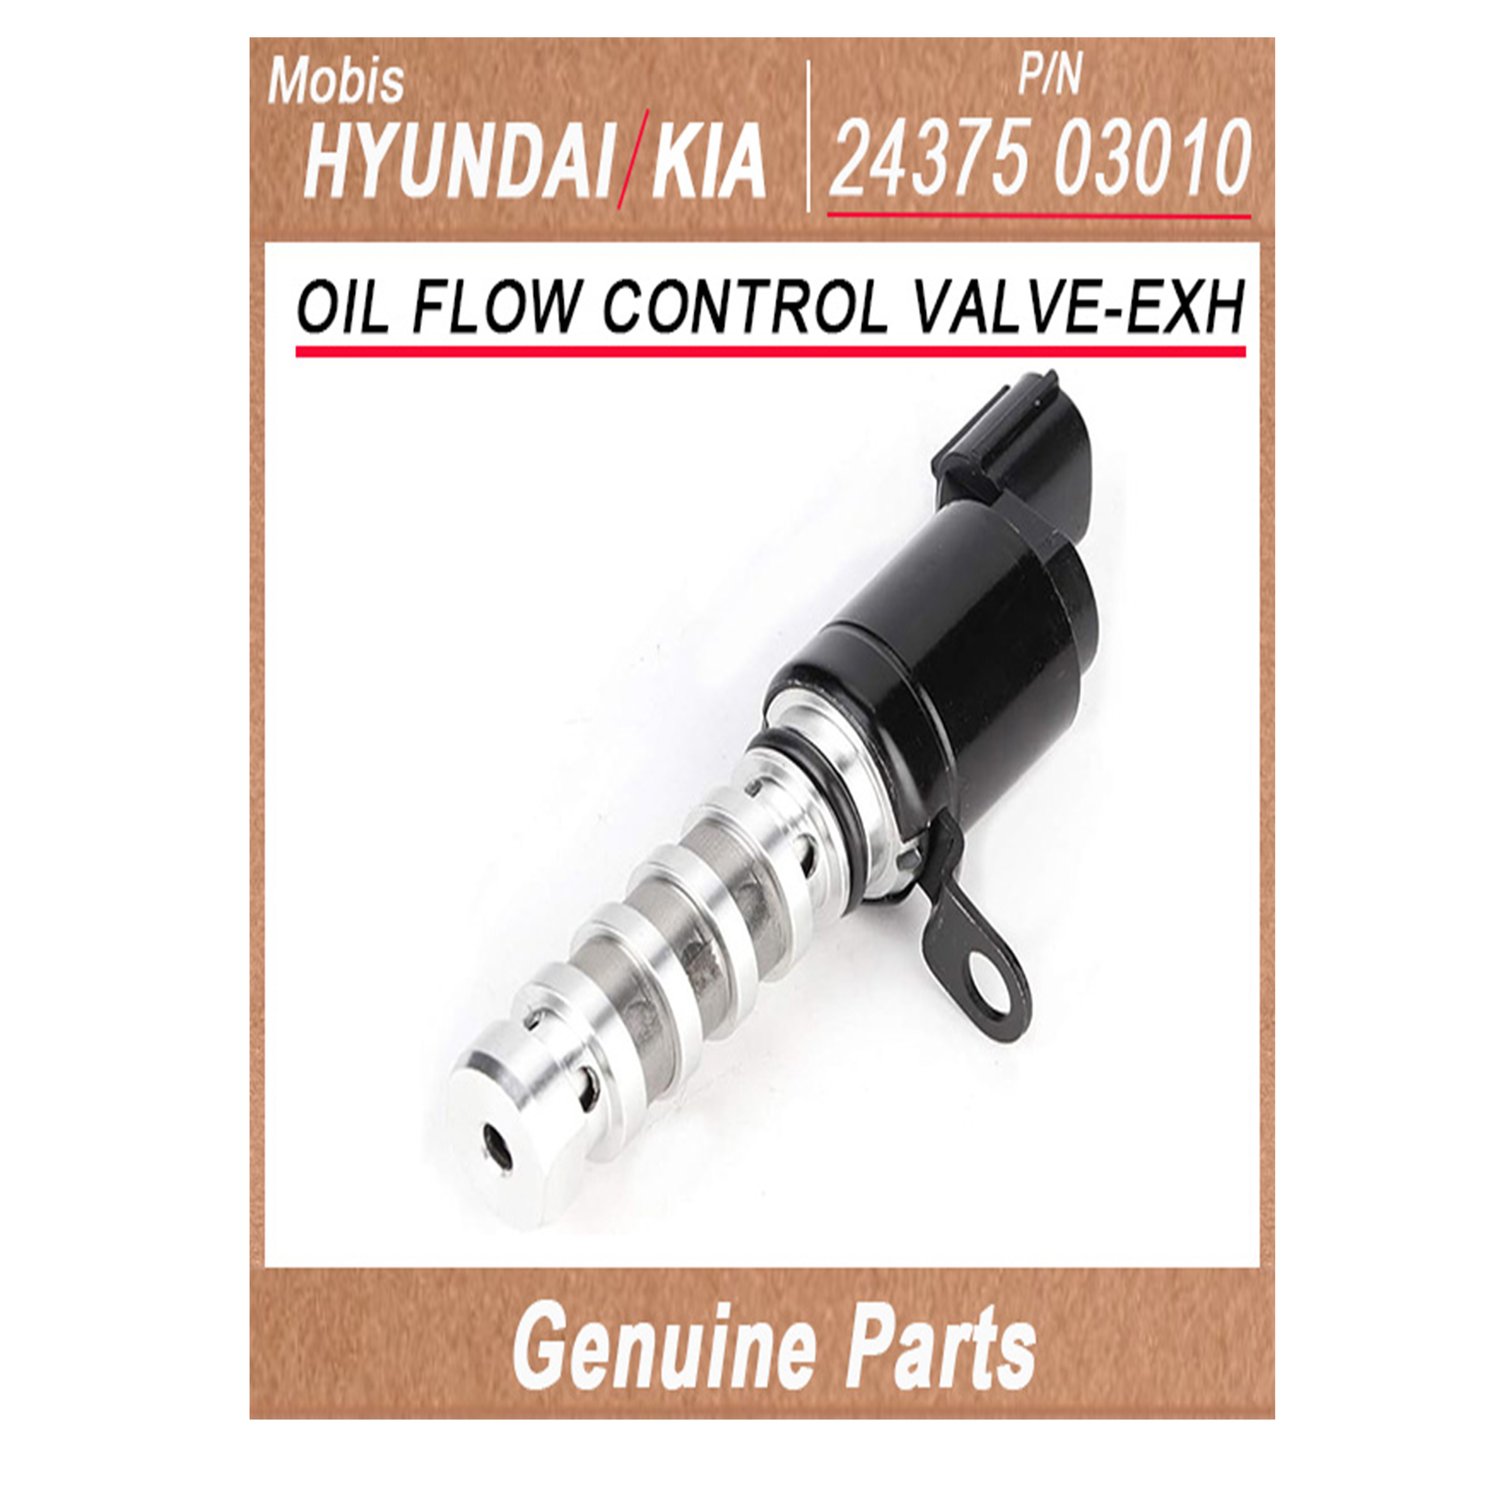 2437503010 _ OIL FLOW CONTROL VALVE_EXH _ Genuine Korean Automotive Spare Parts _ Hyundai Kia _Mobis